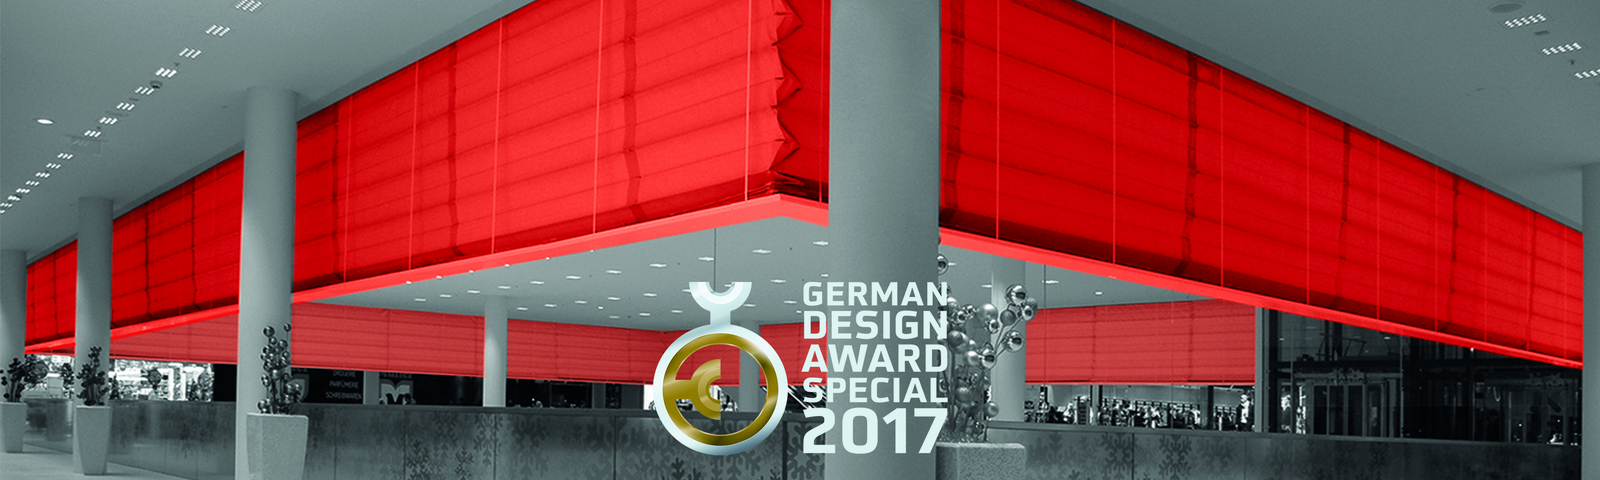 German Design Award 2017 geht an Stöbich-Feuerschutzvorhang